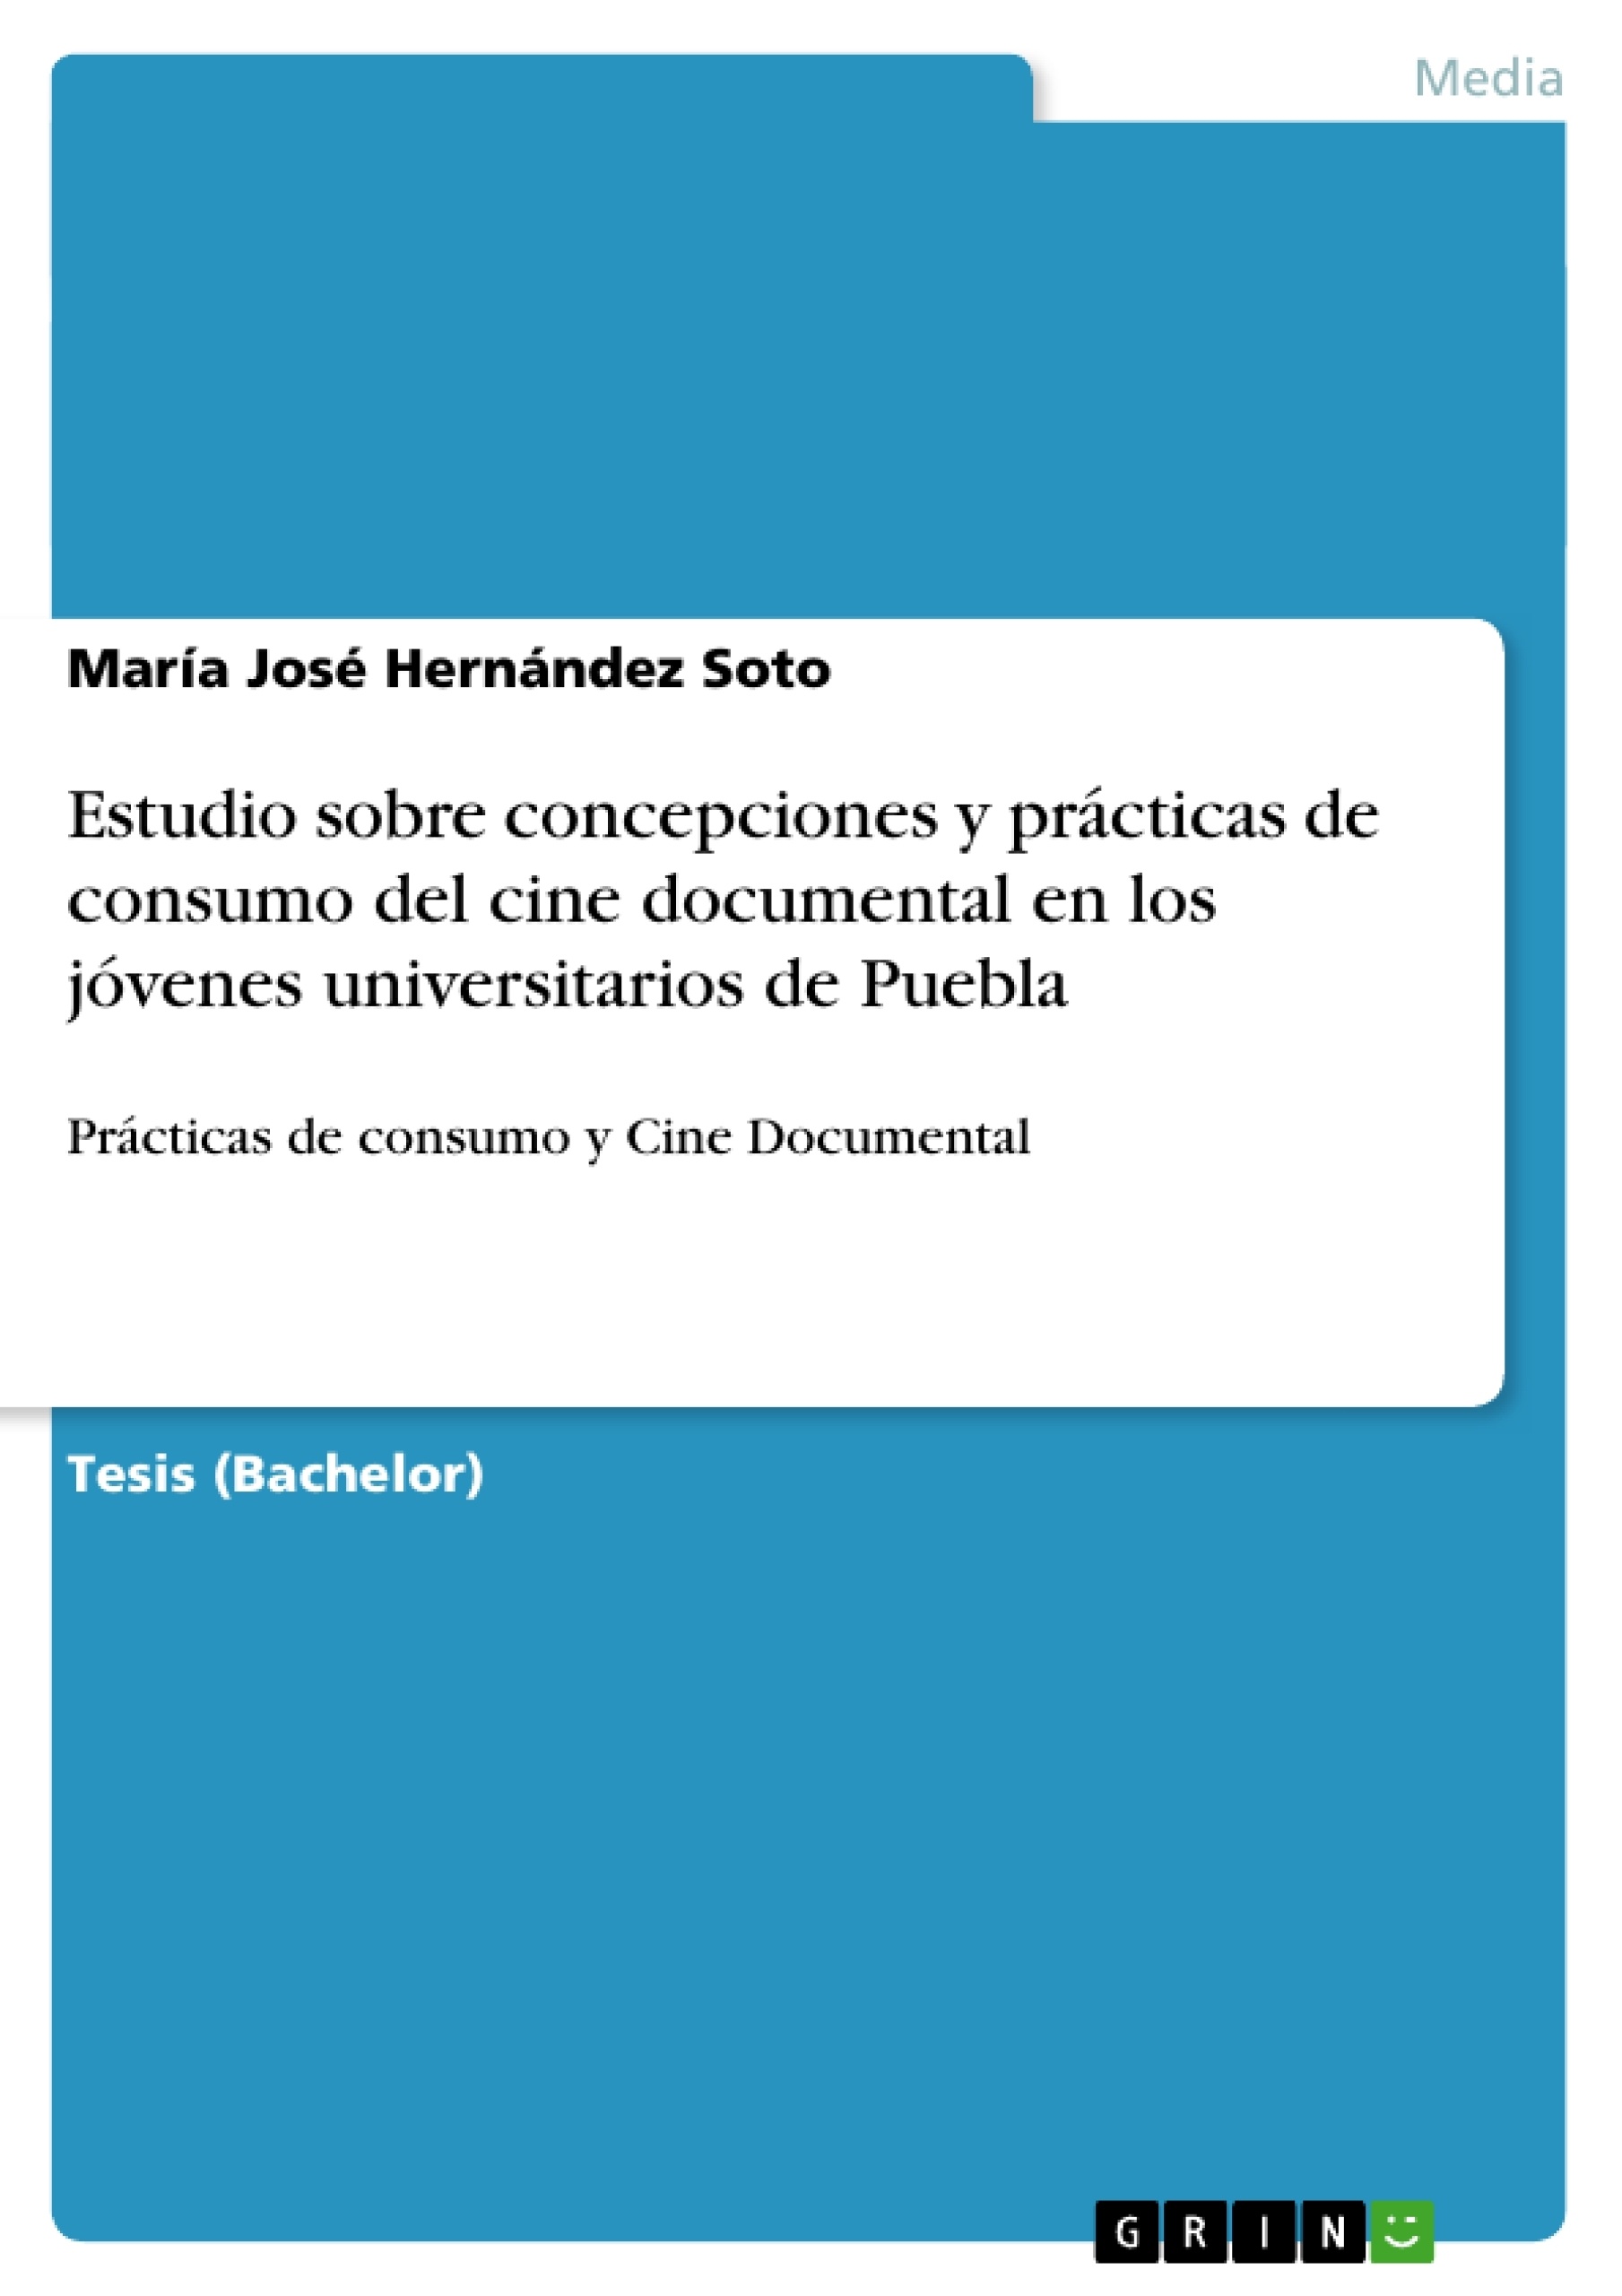 Titre: Estudio sobre concepciones y prácticas de consumo del cine documental en los jóvenes universitarios de Puebla